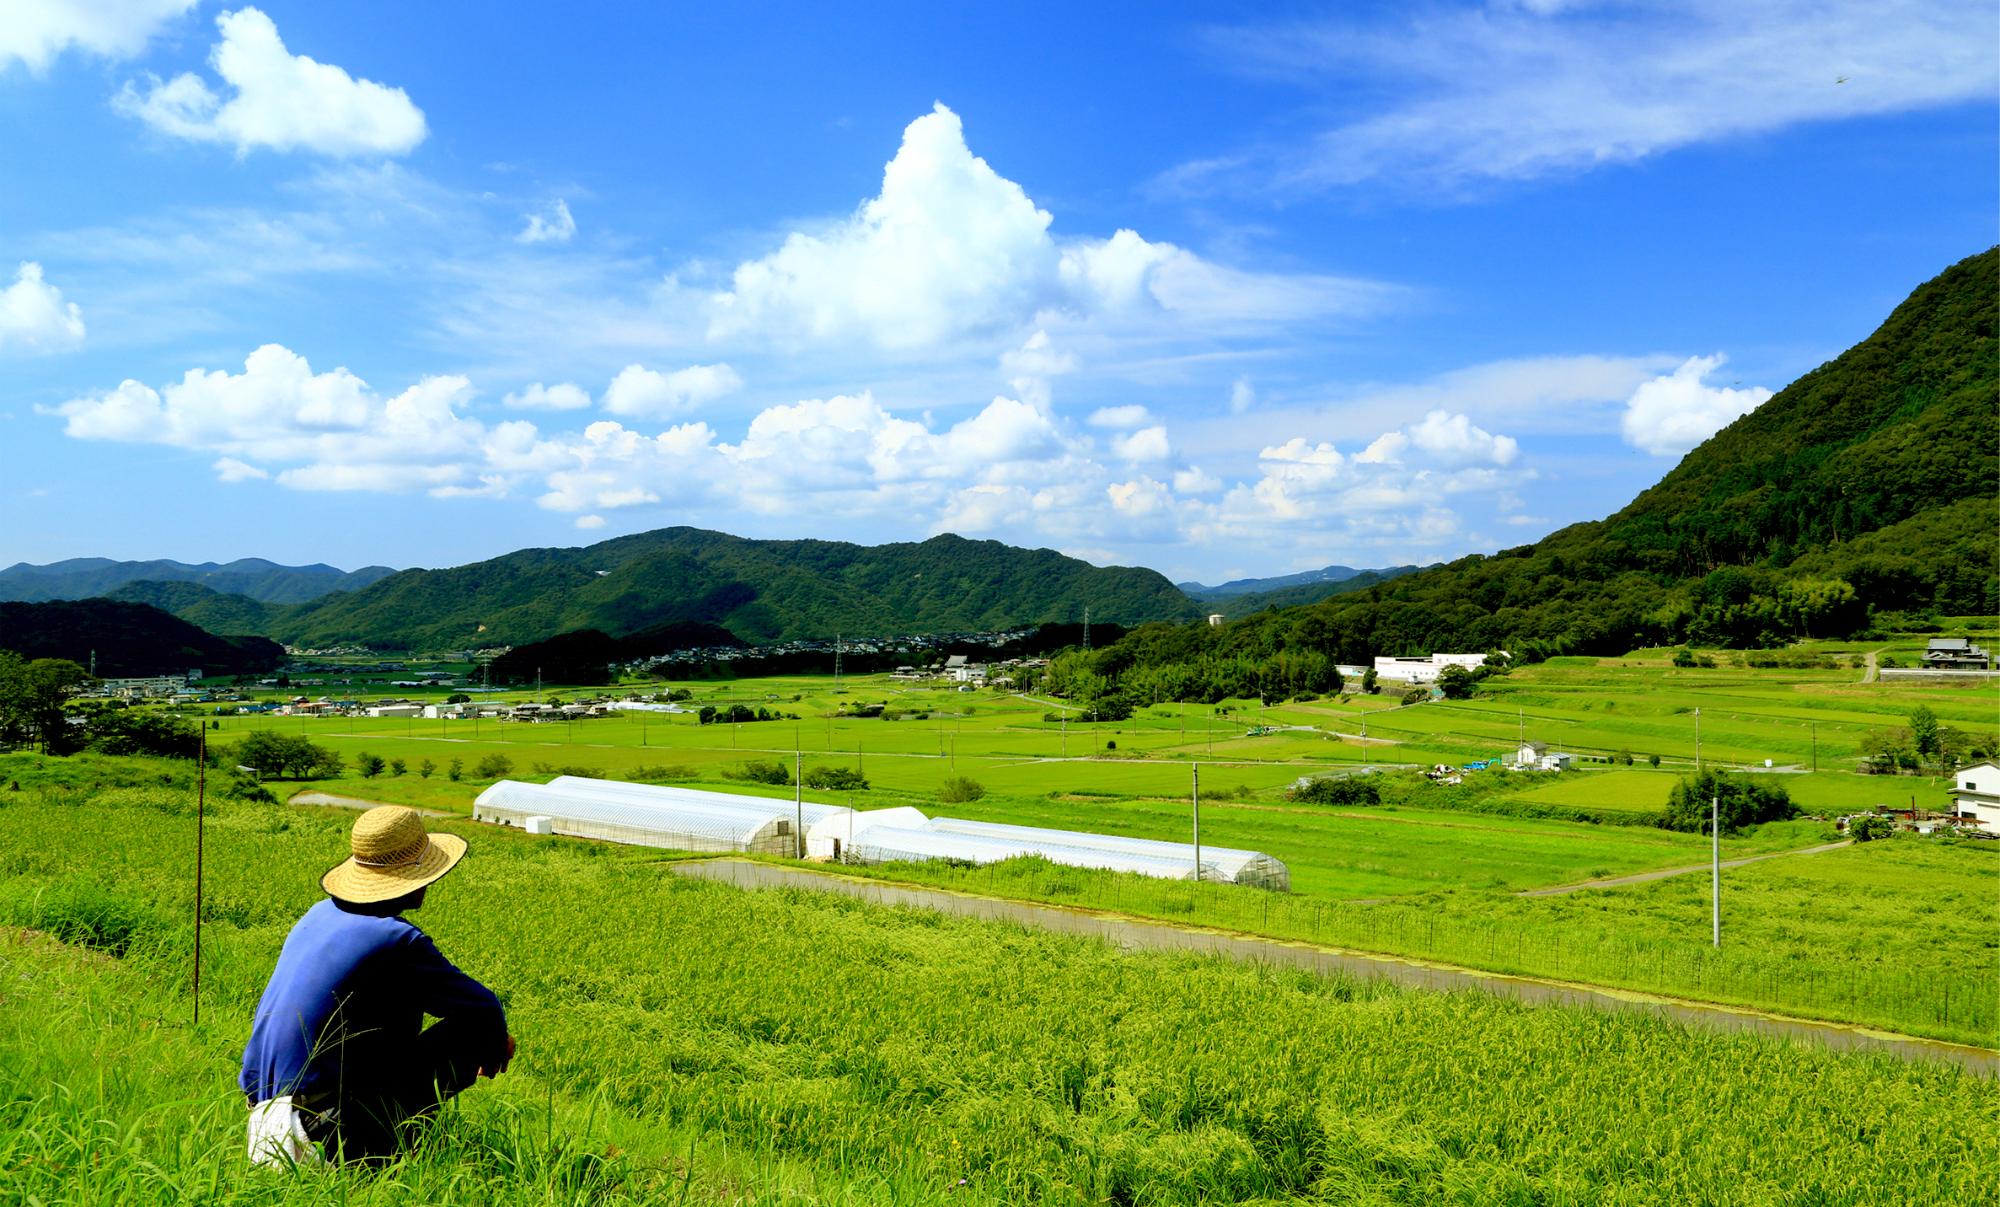 背を向けて座る麦わら帽子をかぶった人物と、その向こうに広がる青空と田園風景の写真